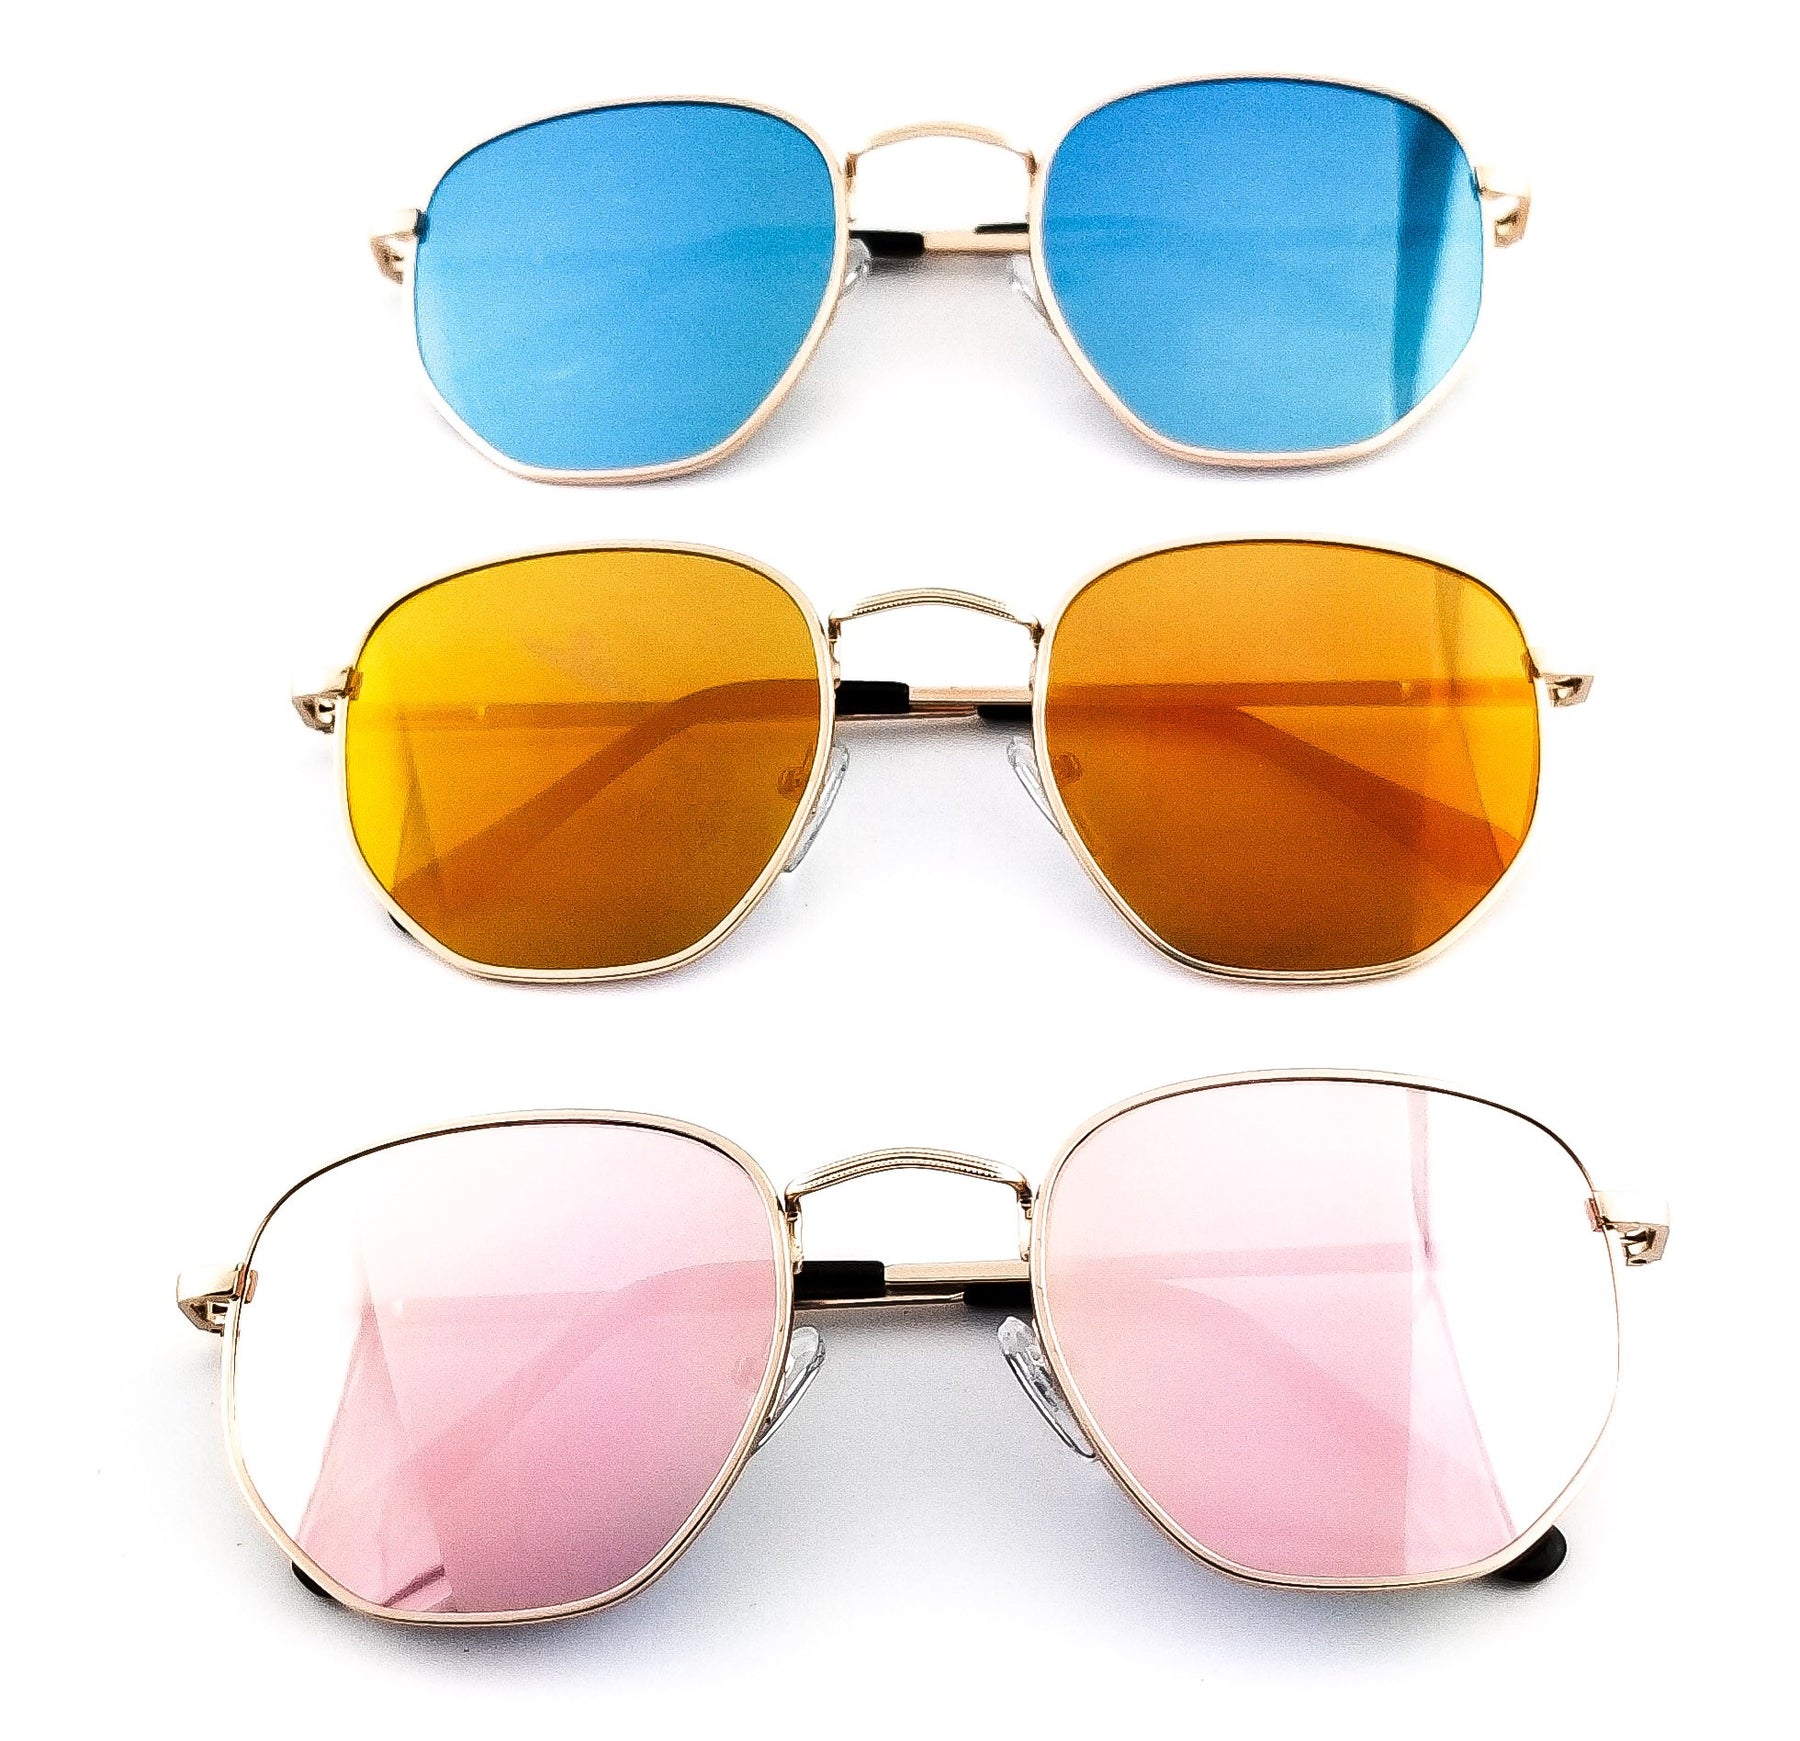 Buy Macen Branded Sunglasses - Branded Sunglasses Online – Blinked Twice